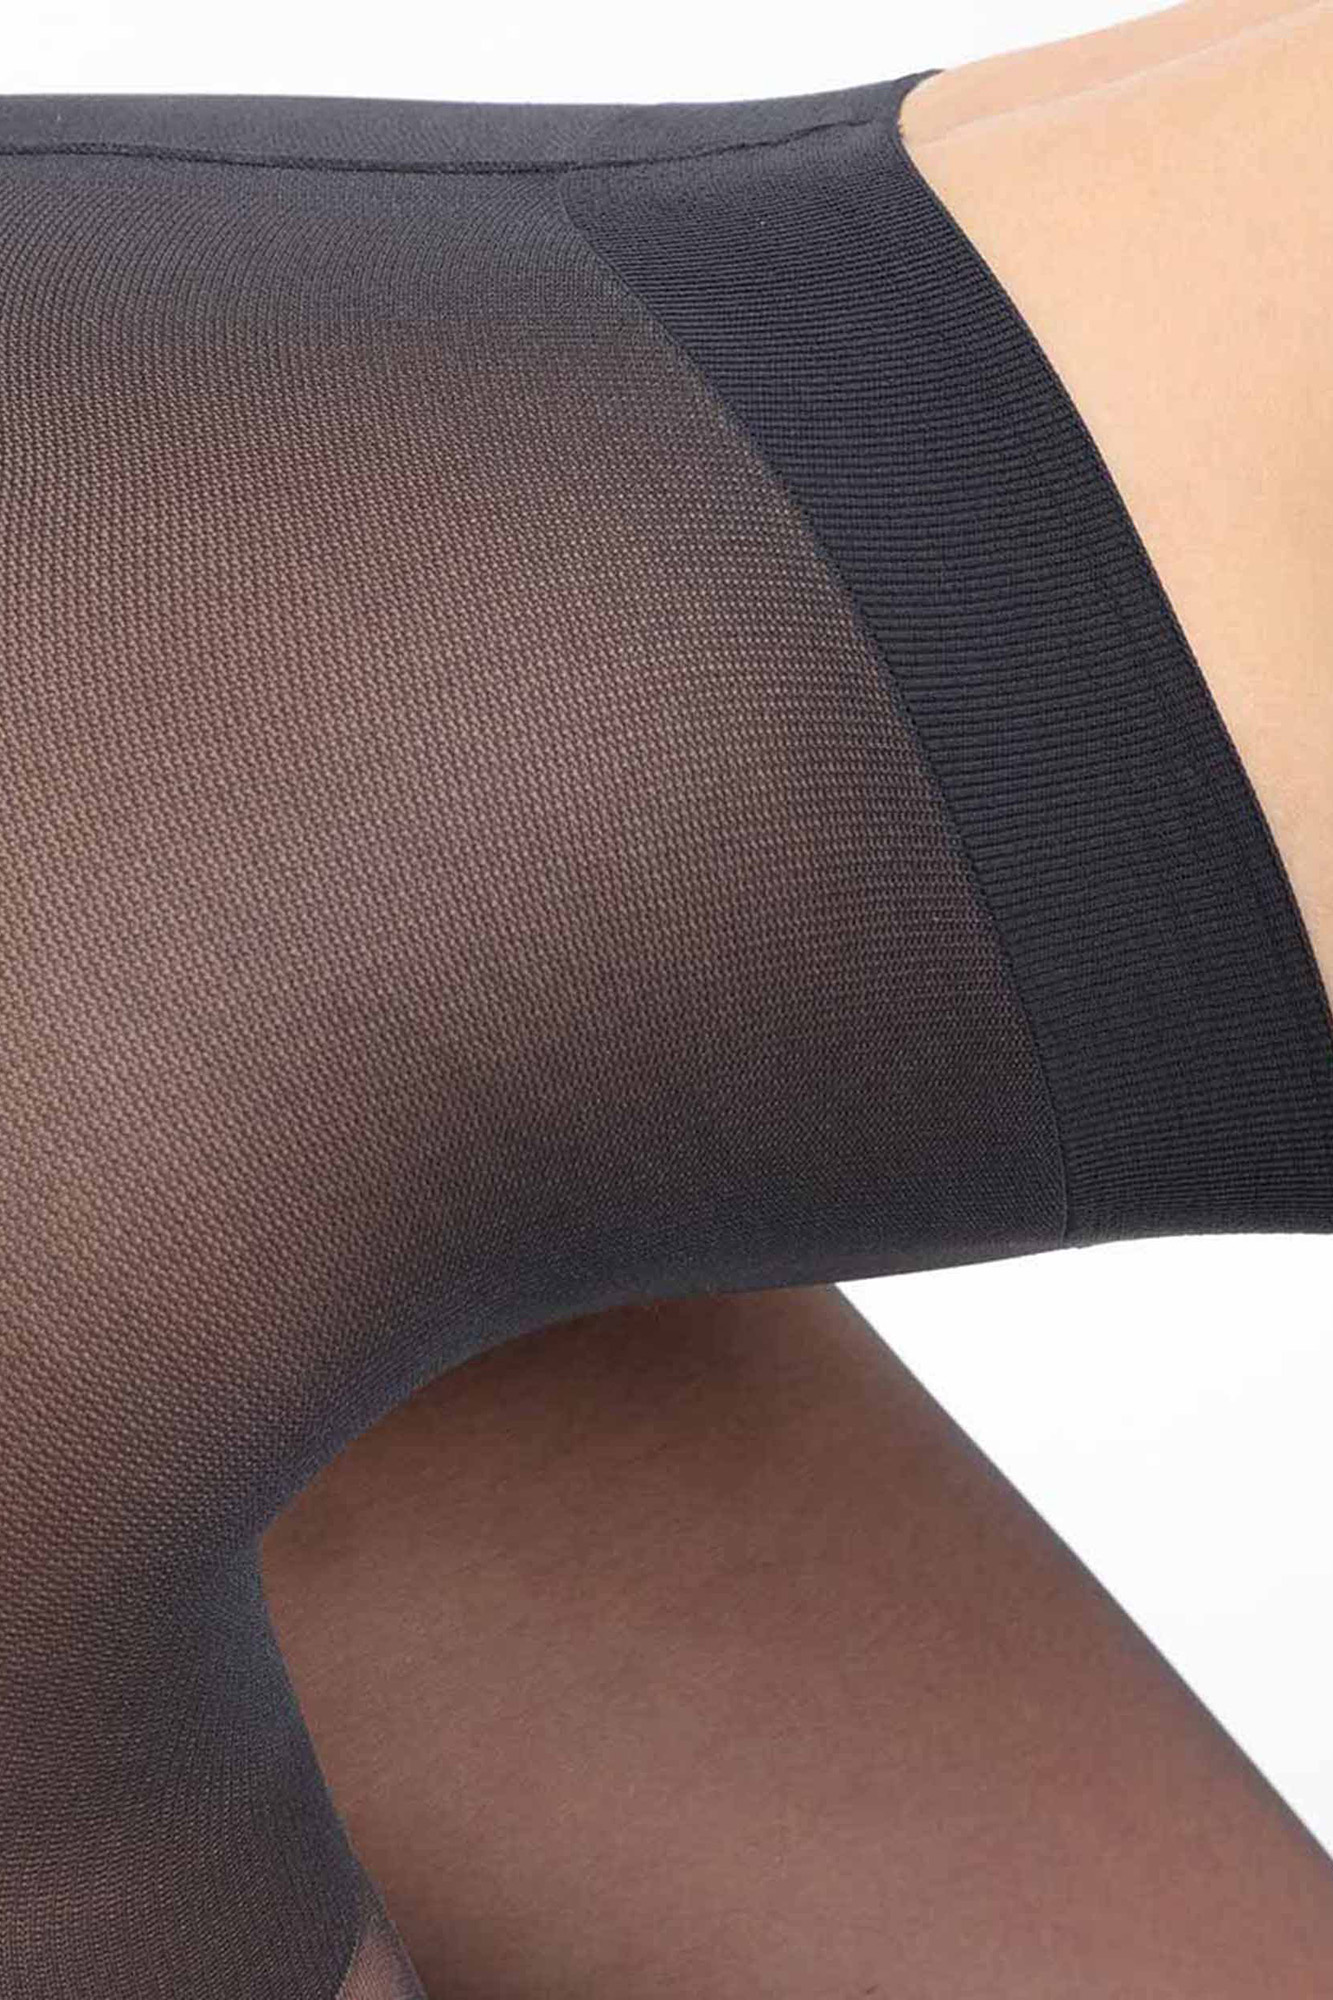 Panty moldeador cintura cómoda negro 22 DEN, Complementos y accesorios de  mujer